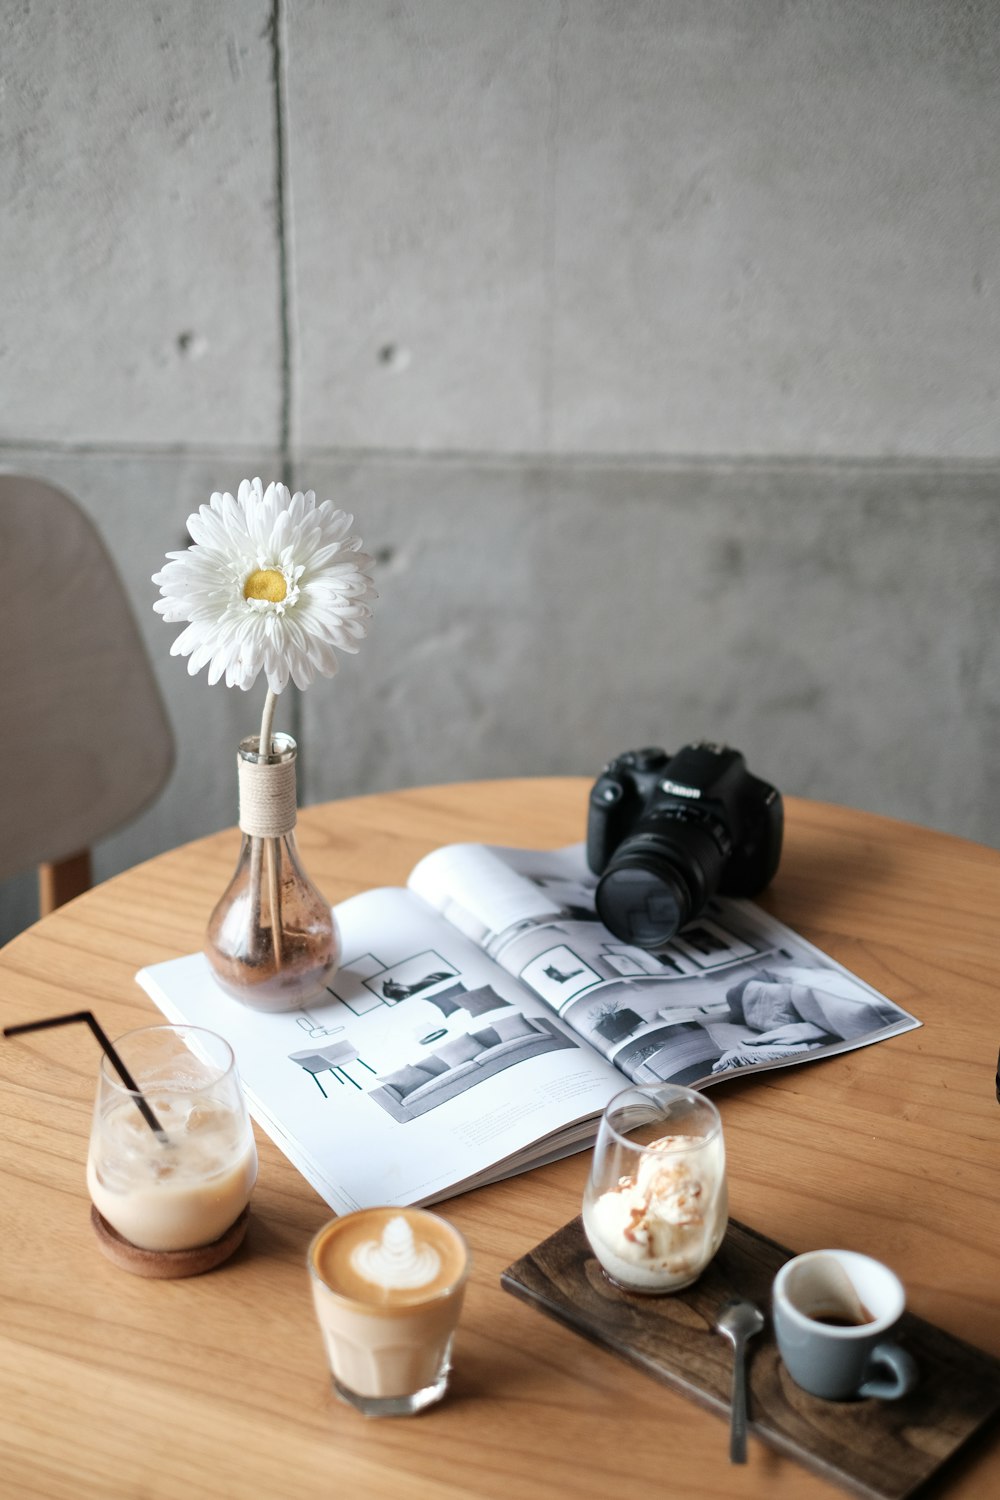 schwarze Canon DSLR-Kamera auf weißem Buch neben weißer Blume